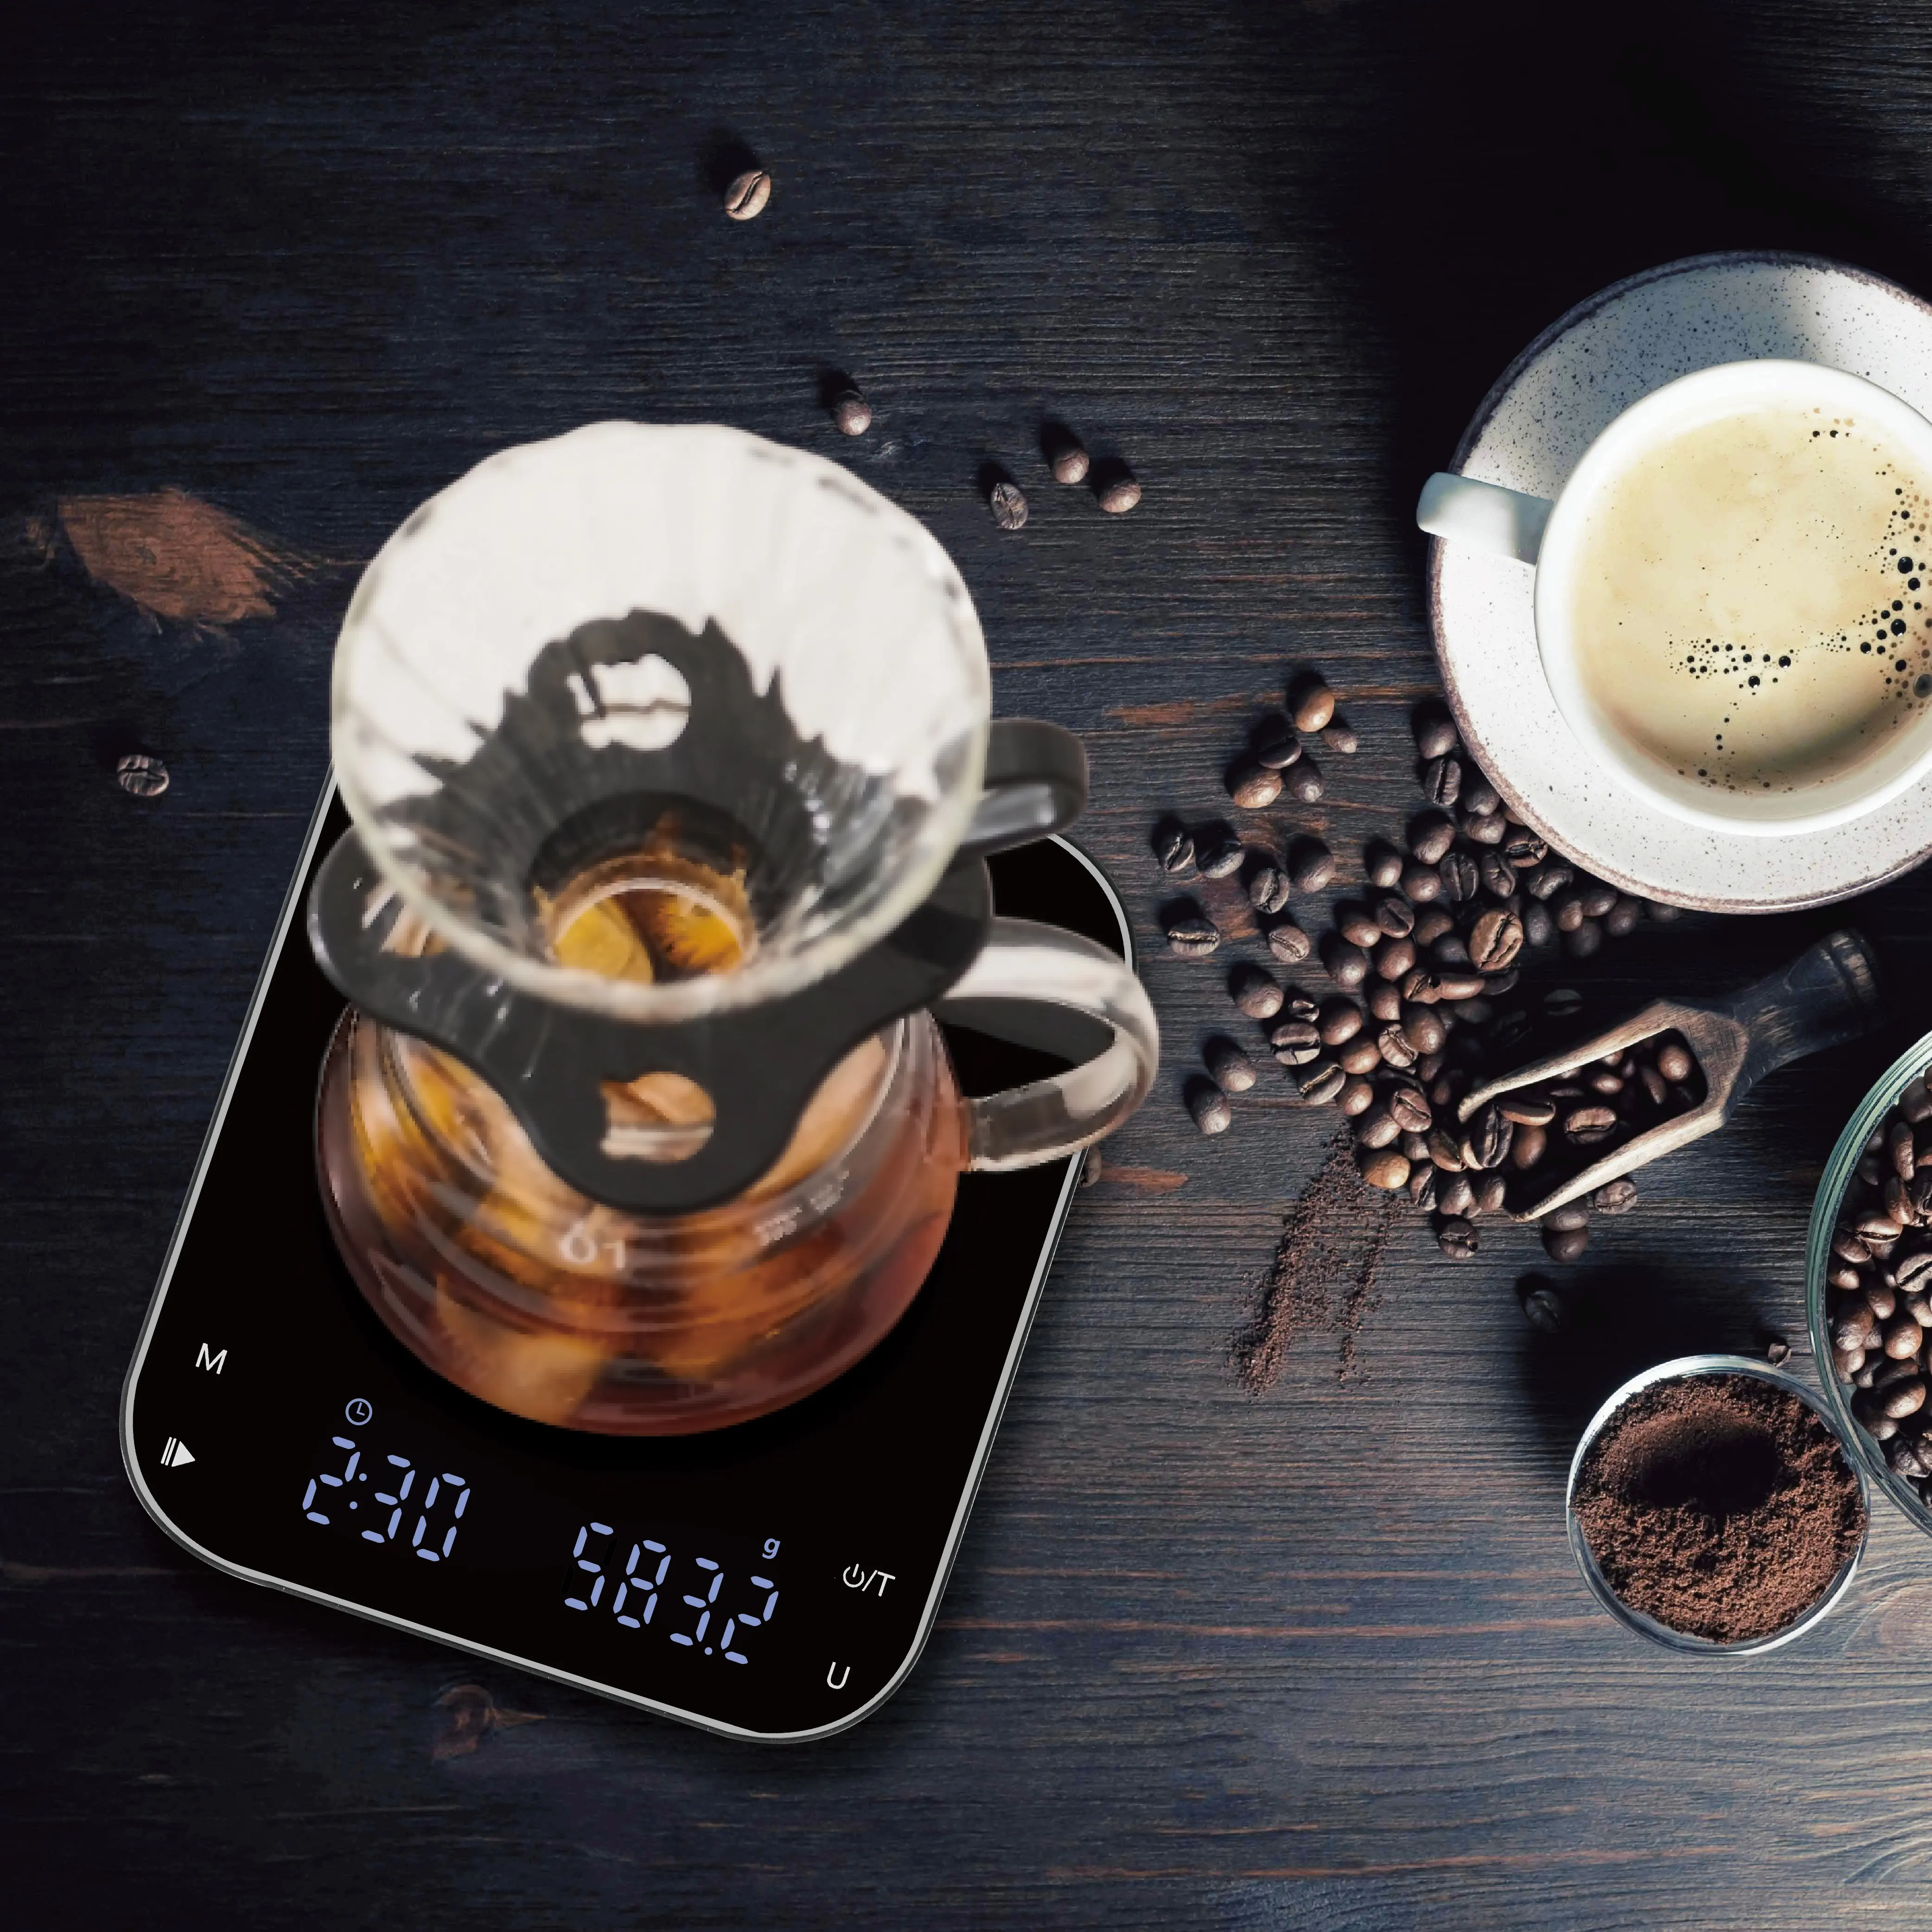 Alta precisione Led 3kg cucina elettronica di pesatura equilibrio Timemore digitale bilancia caffè Espresso bilancia con Timer